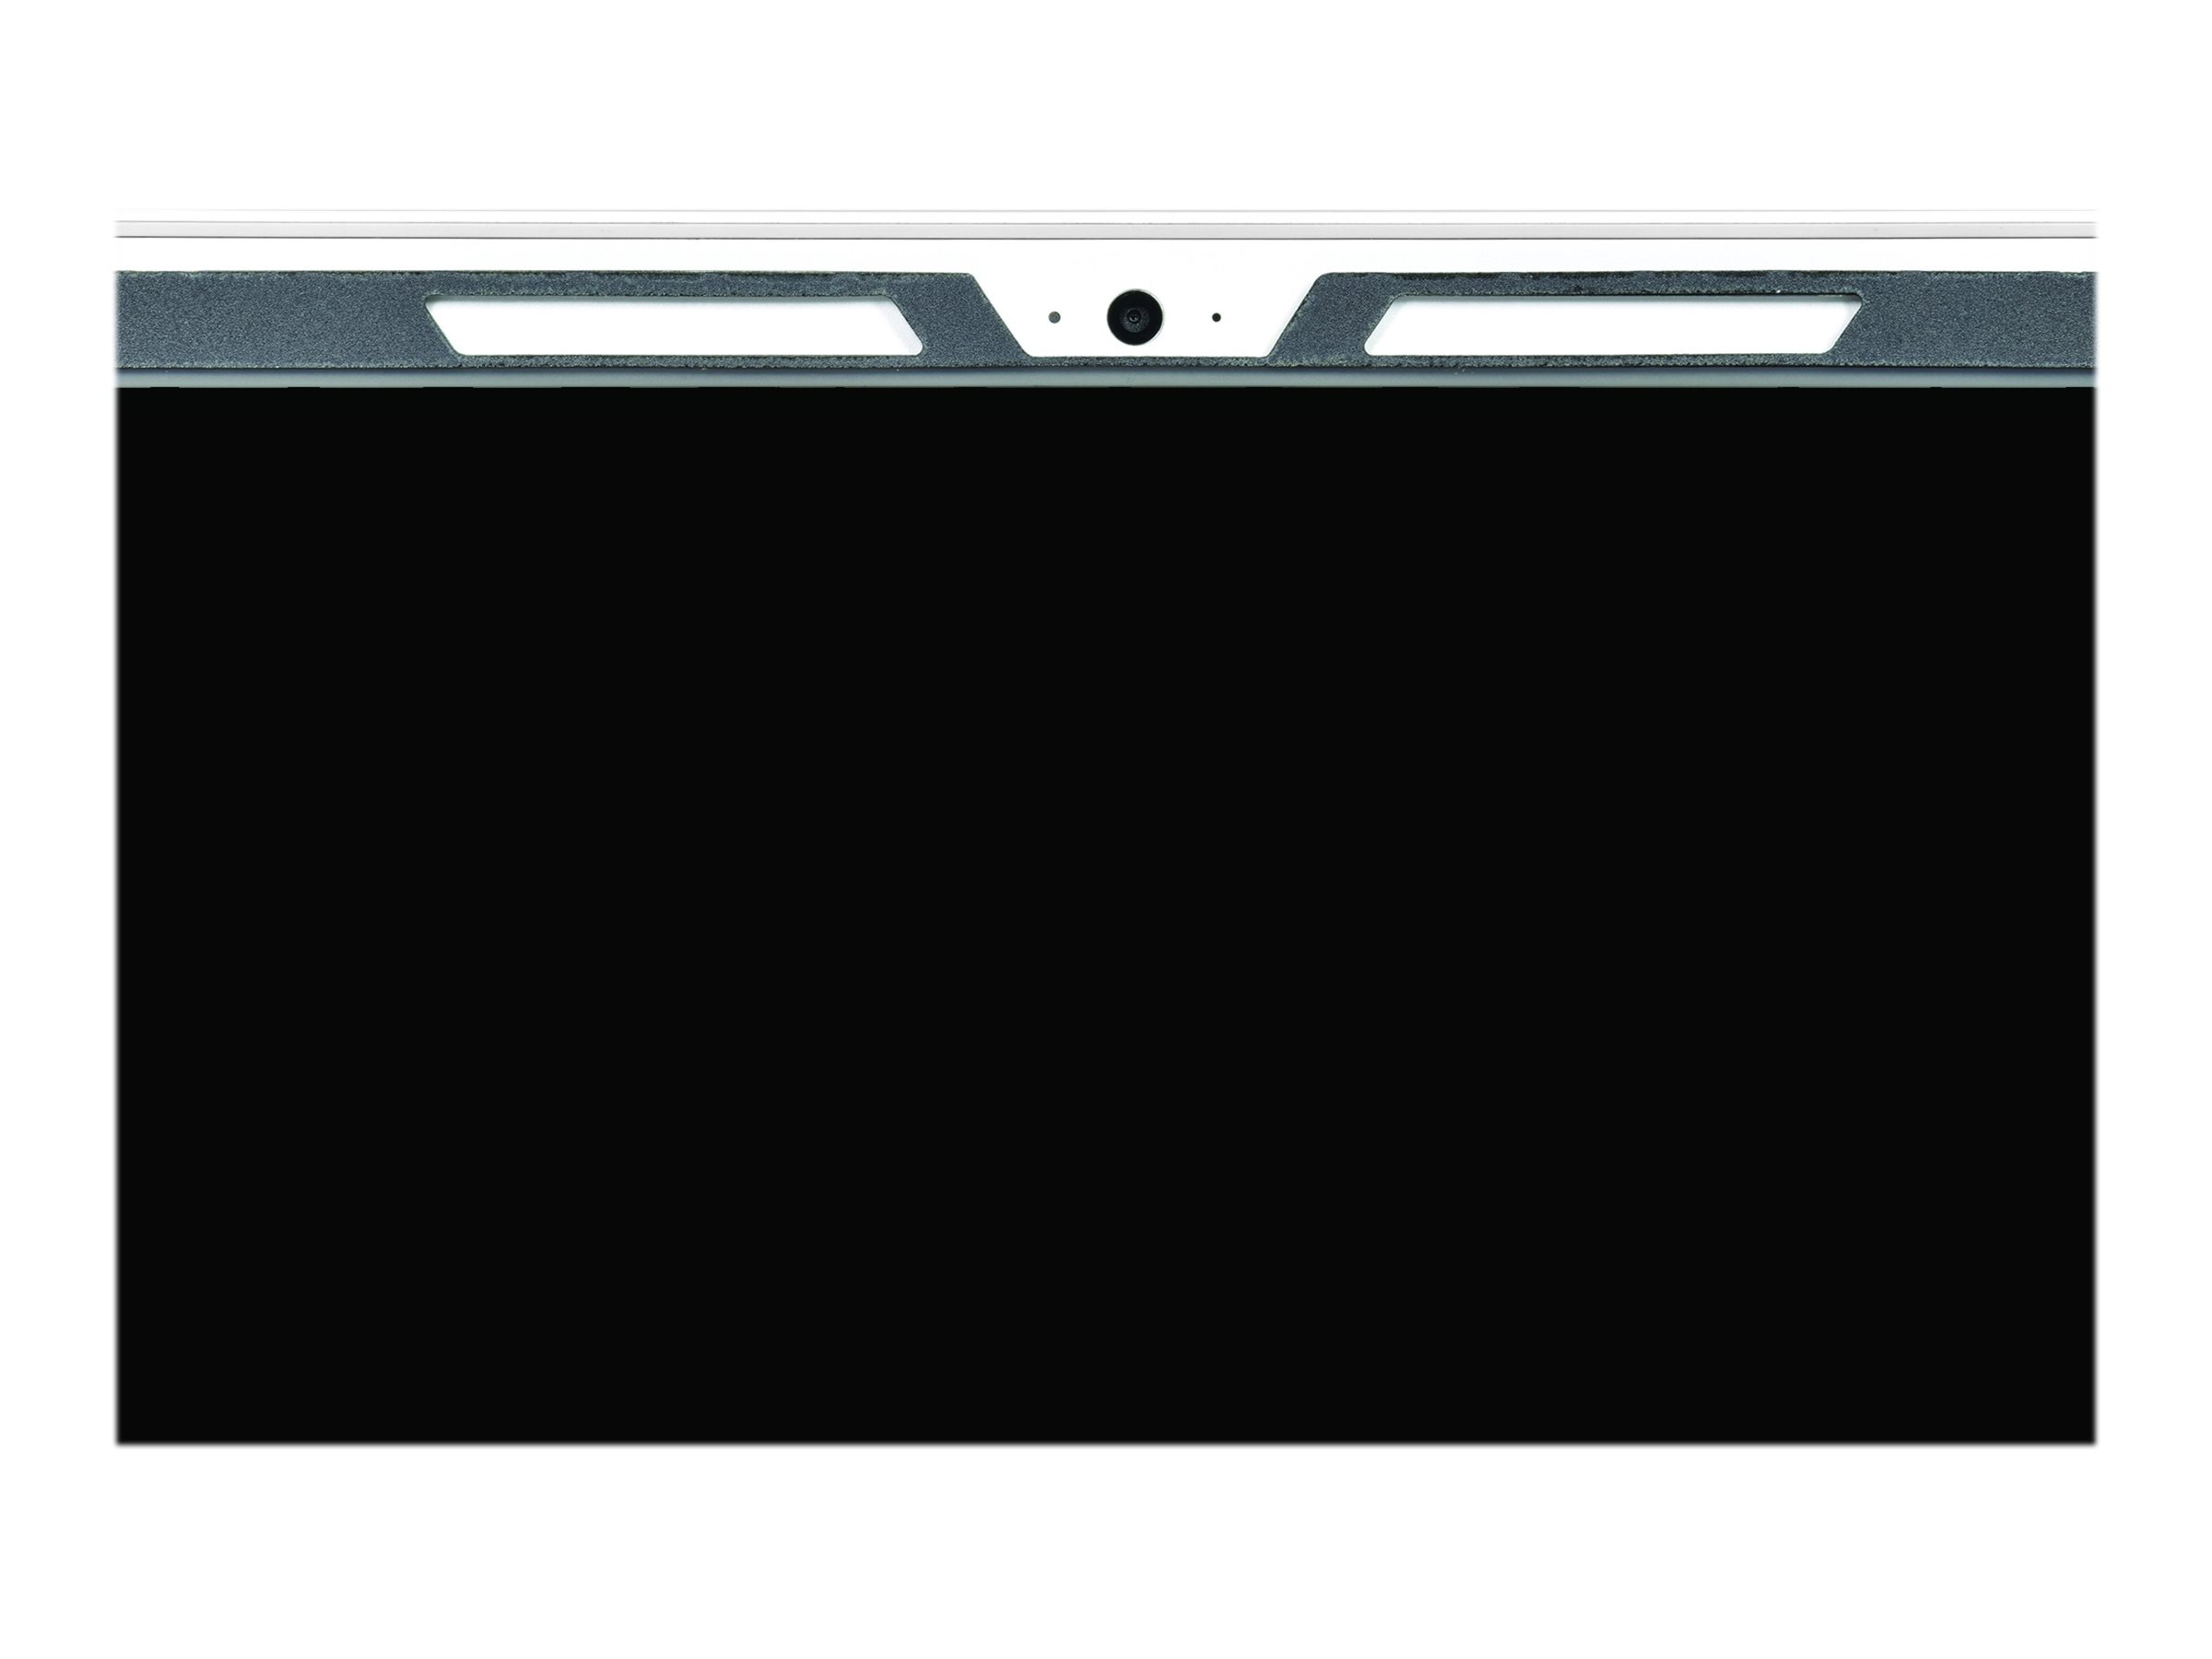 PORT Designs PORT Connect CLIP ON UNIVERSAL - Blickschutzfilter für Notebook - 39,6 cm Breitbild (15,6" Breitbild)